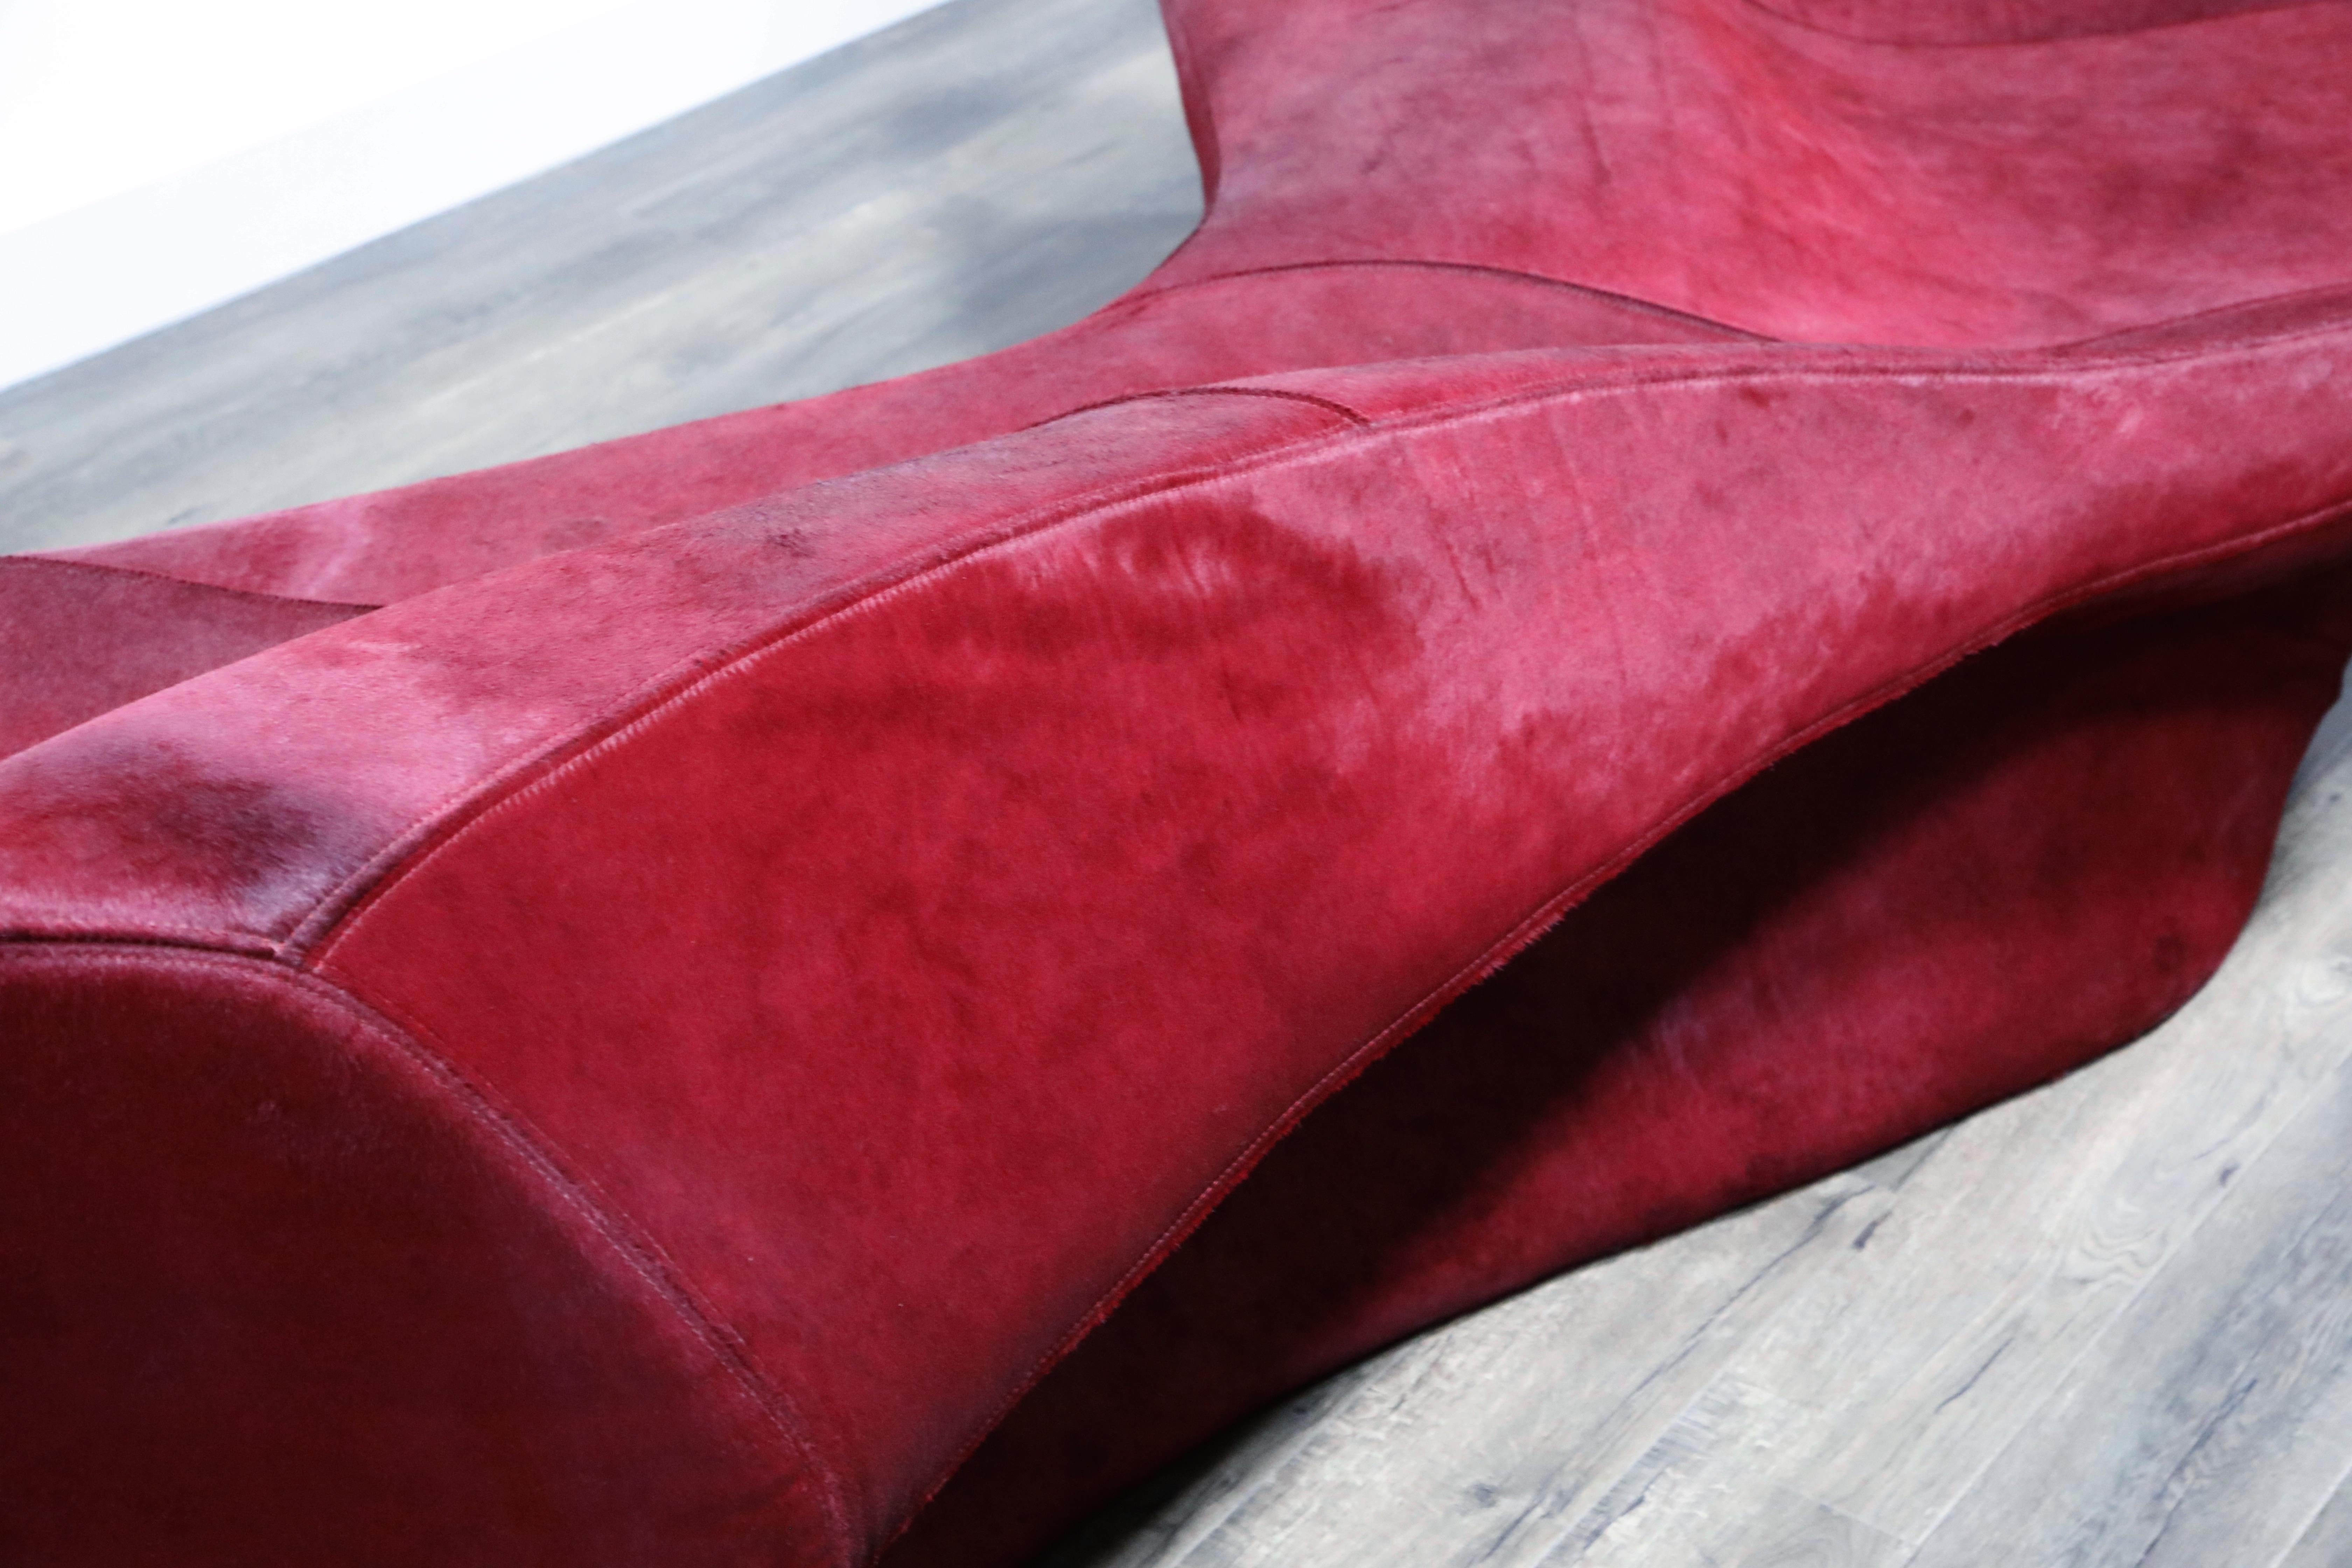 'Moraine' Biomorphic Sofa by Zaha Hadid for Sawaya and Moroni Italy ...